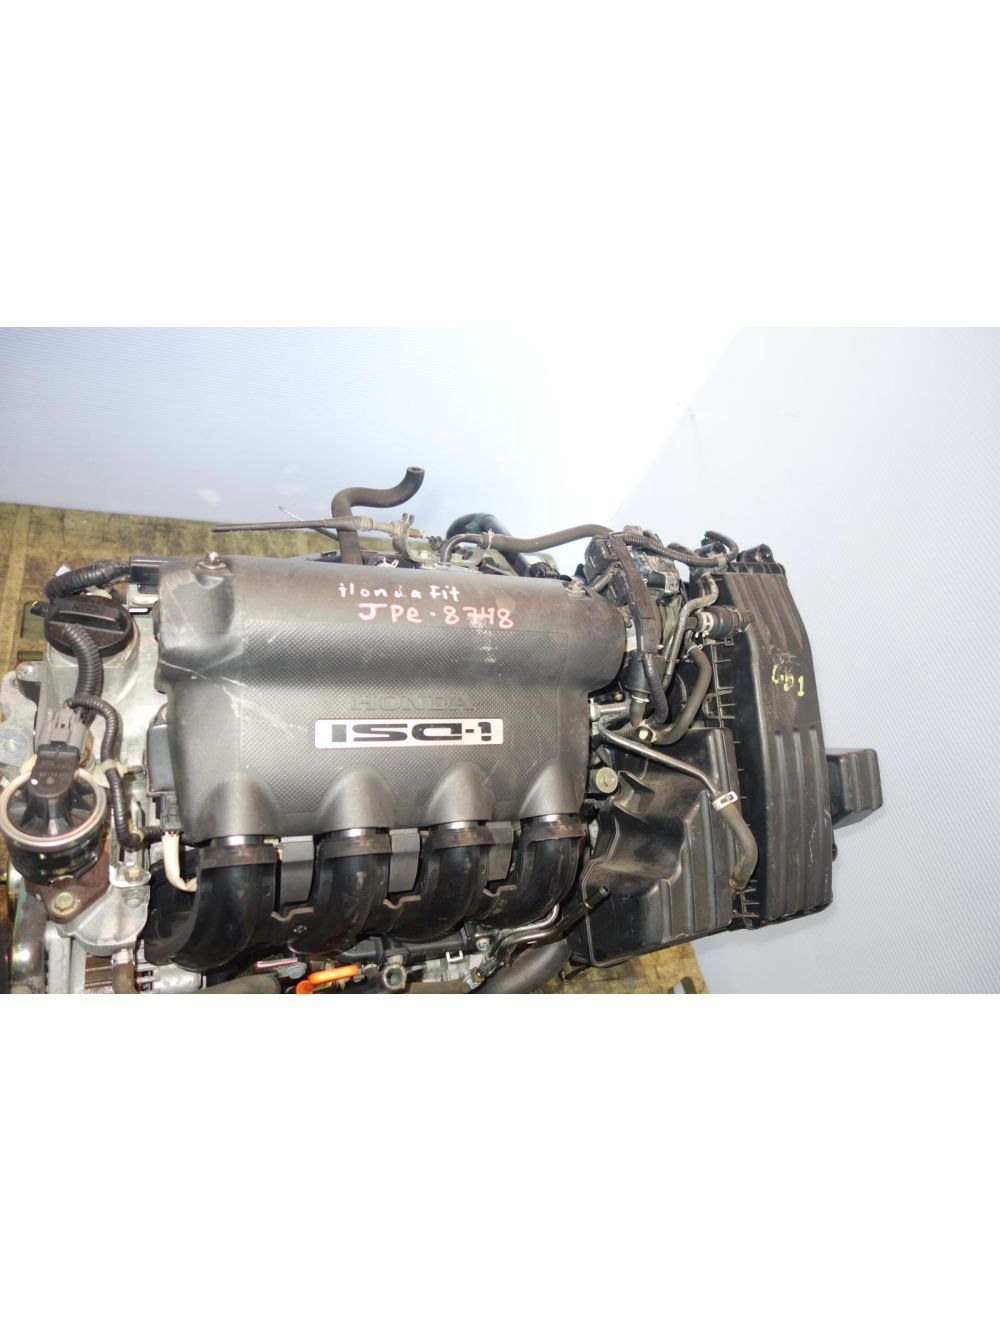 JDM Honda Engines For Sale